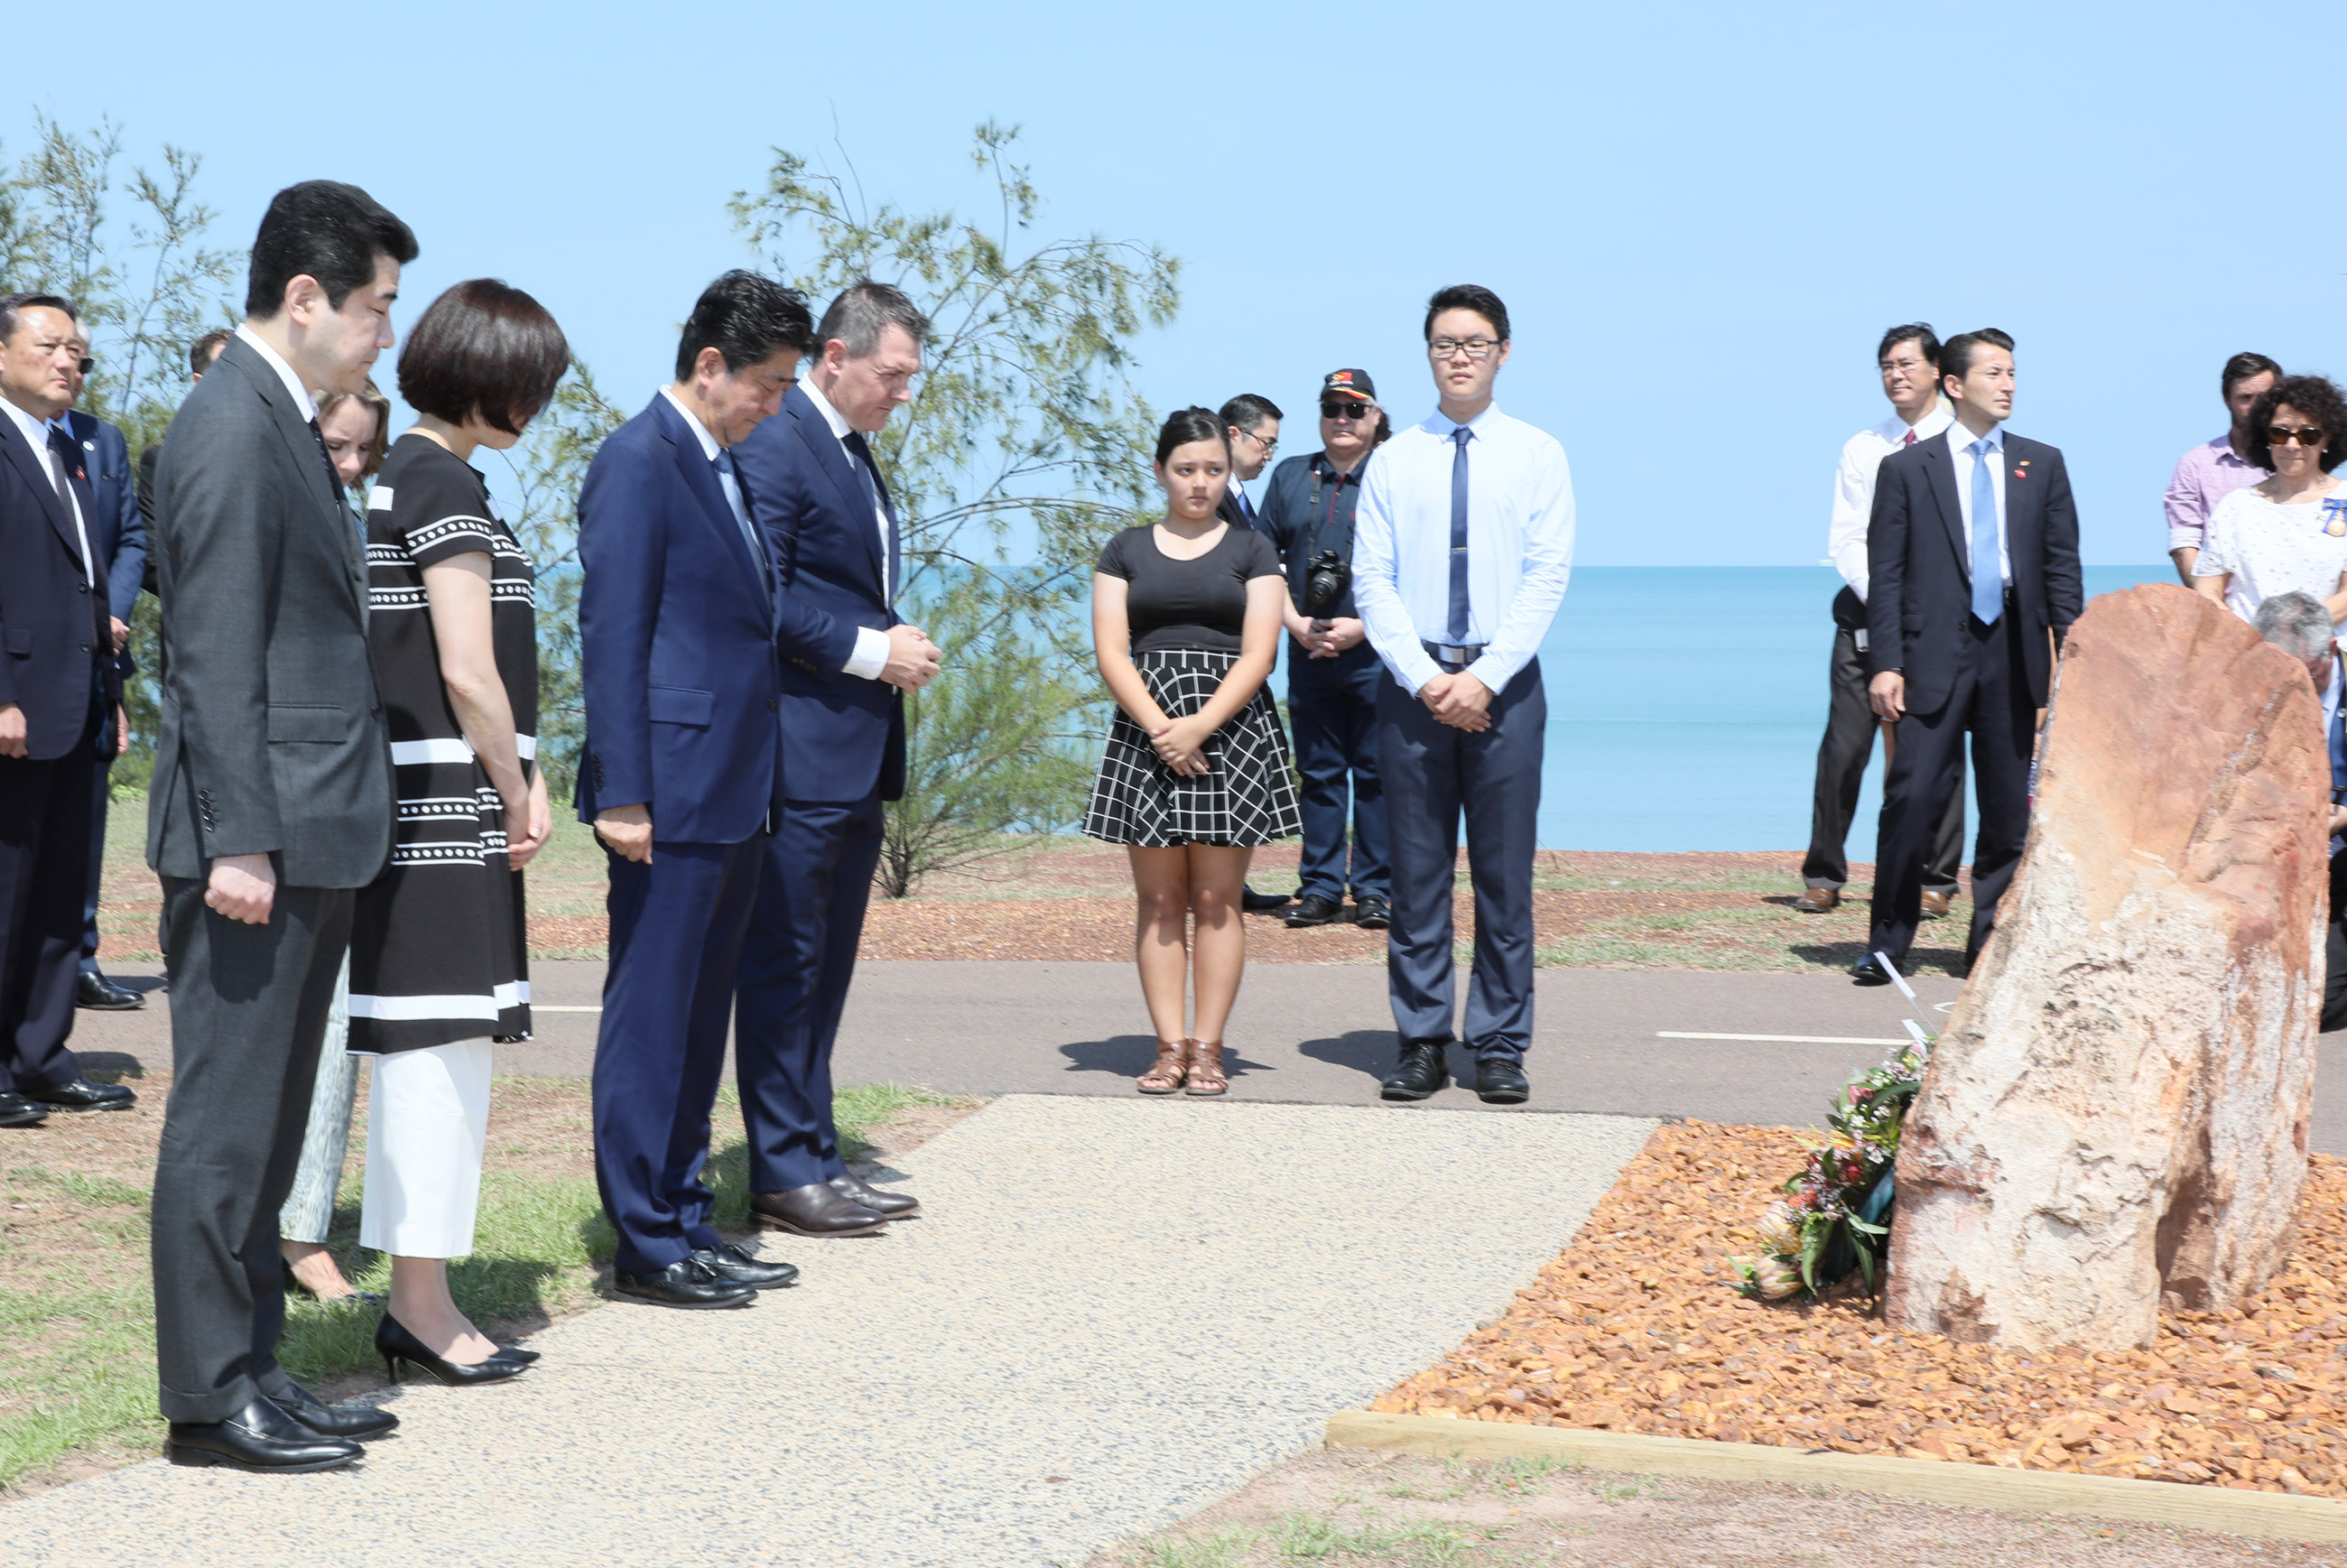 安倍总理访问了澳大利亚联邦。